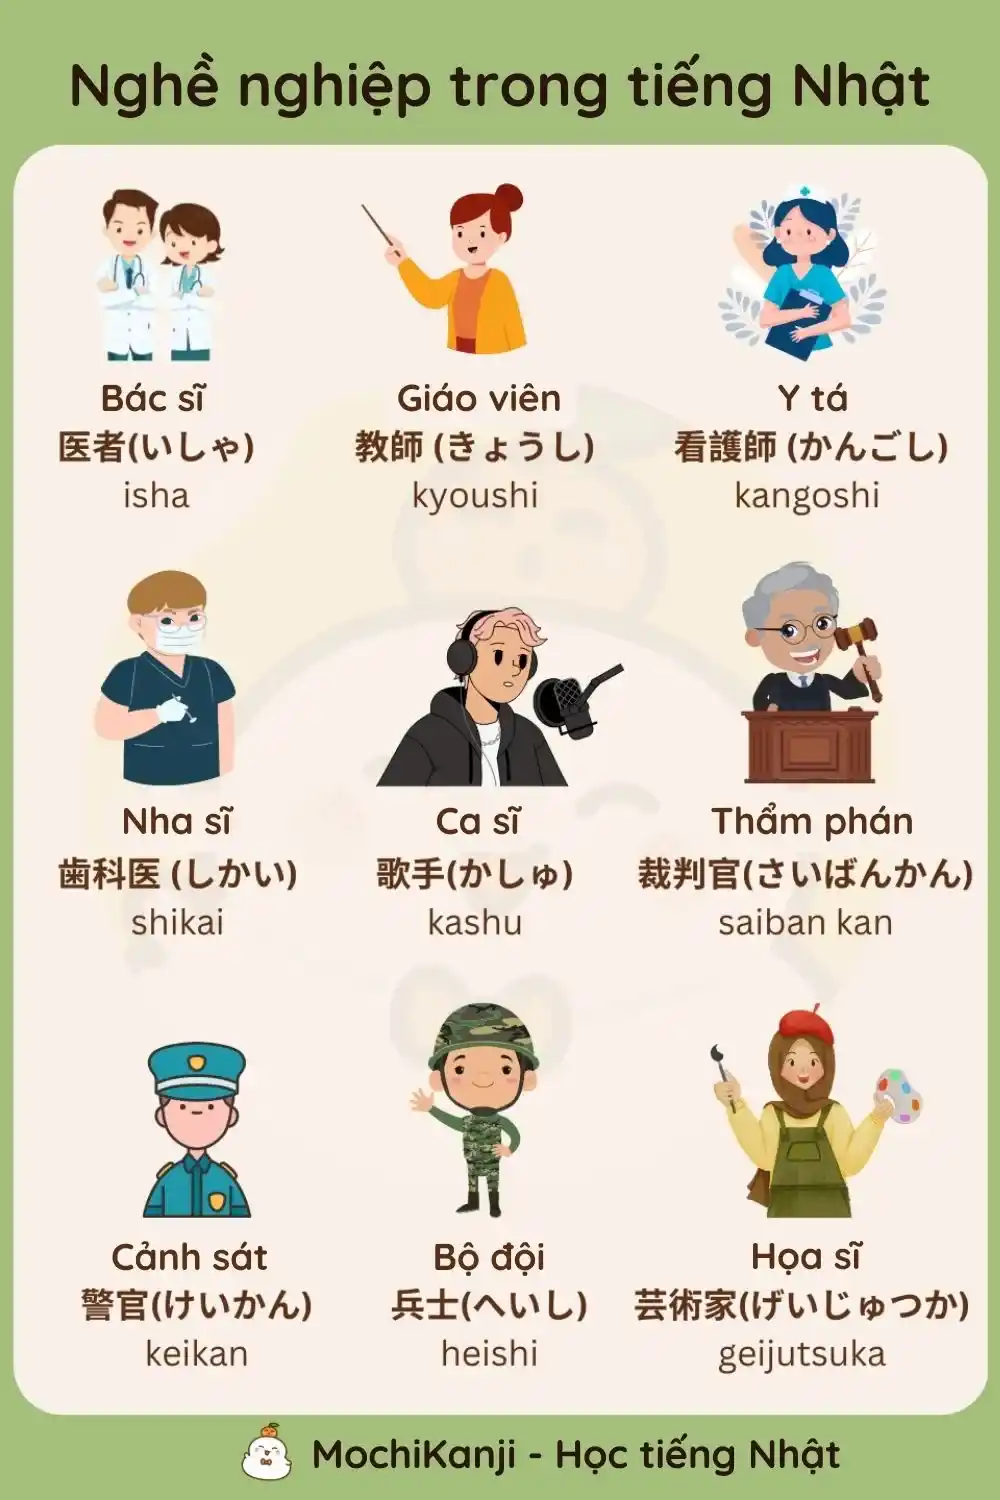 Một số nghề nghiệp trong tiếng Nhật